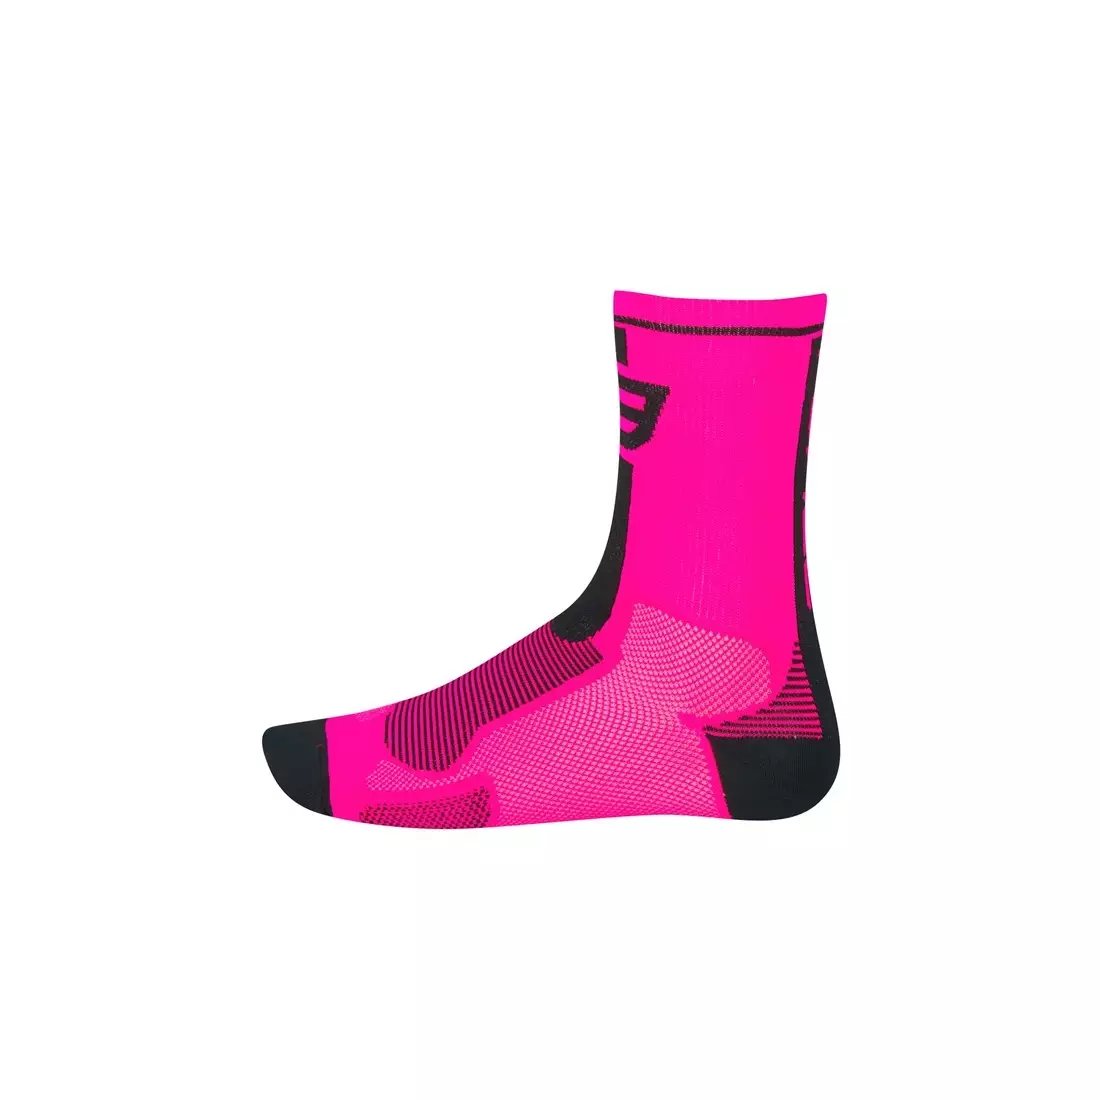 FORCE LONG ružové športové ponožky